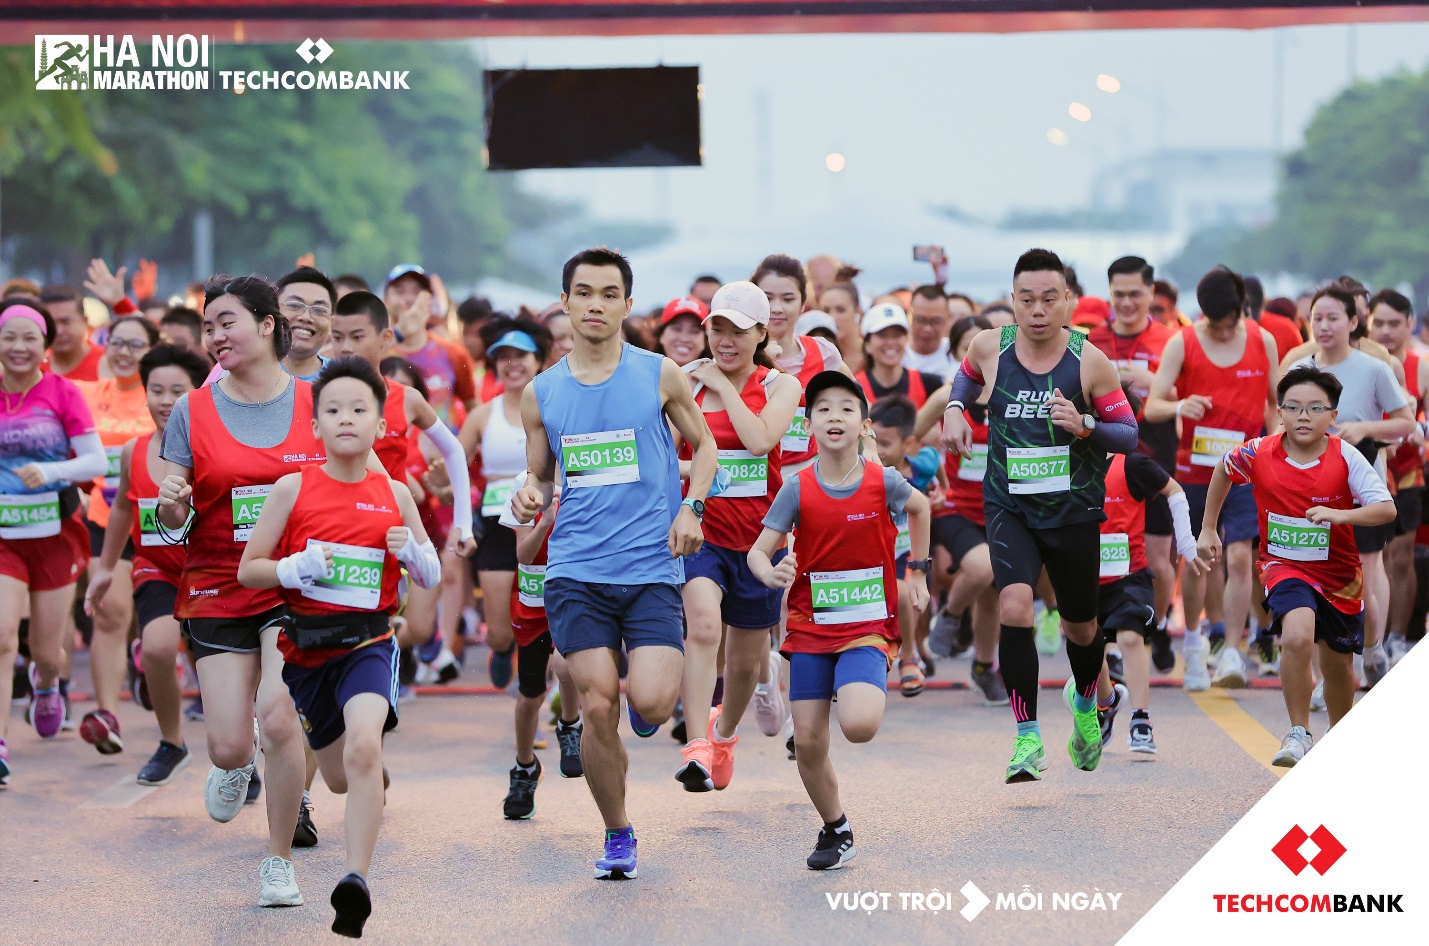 Điểm qua những con số ấn tượng của giải Hà Nội Marathon Techcombank lần đầu tiên - Ảnh 2.